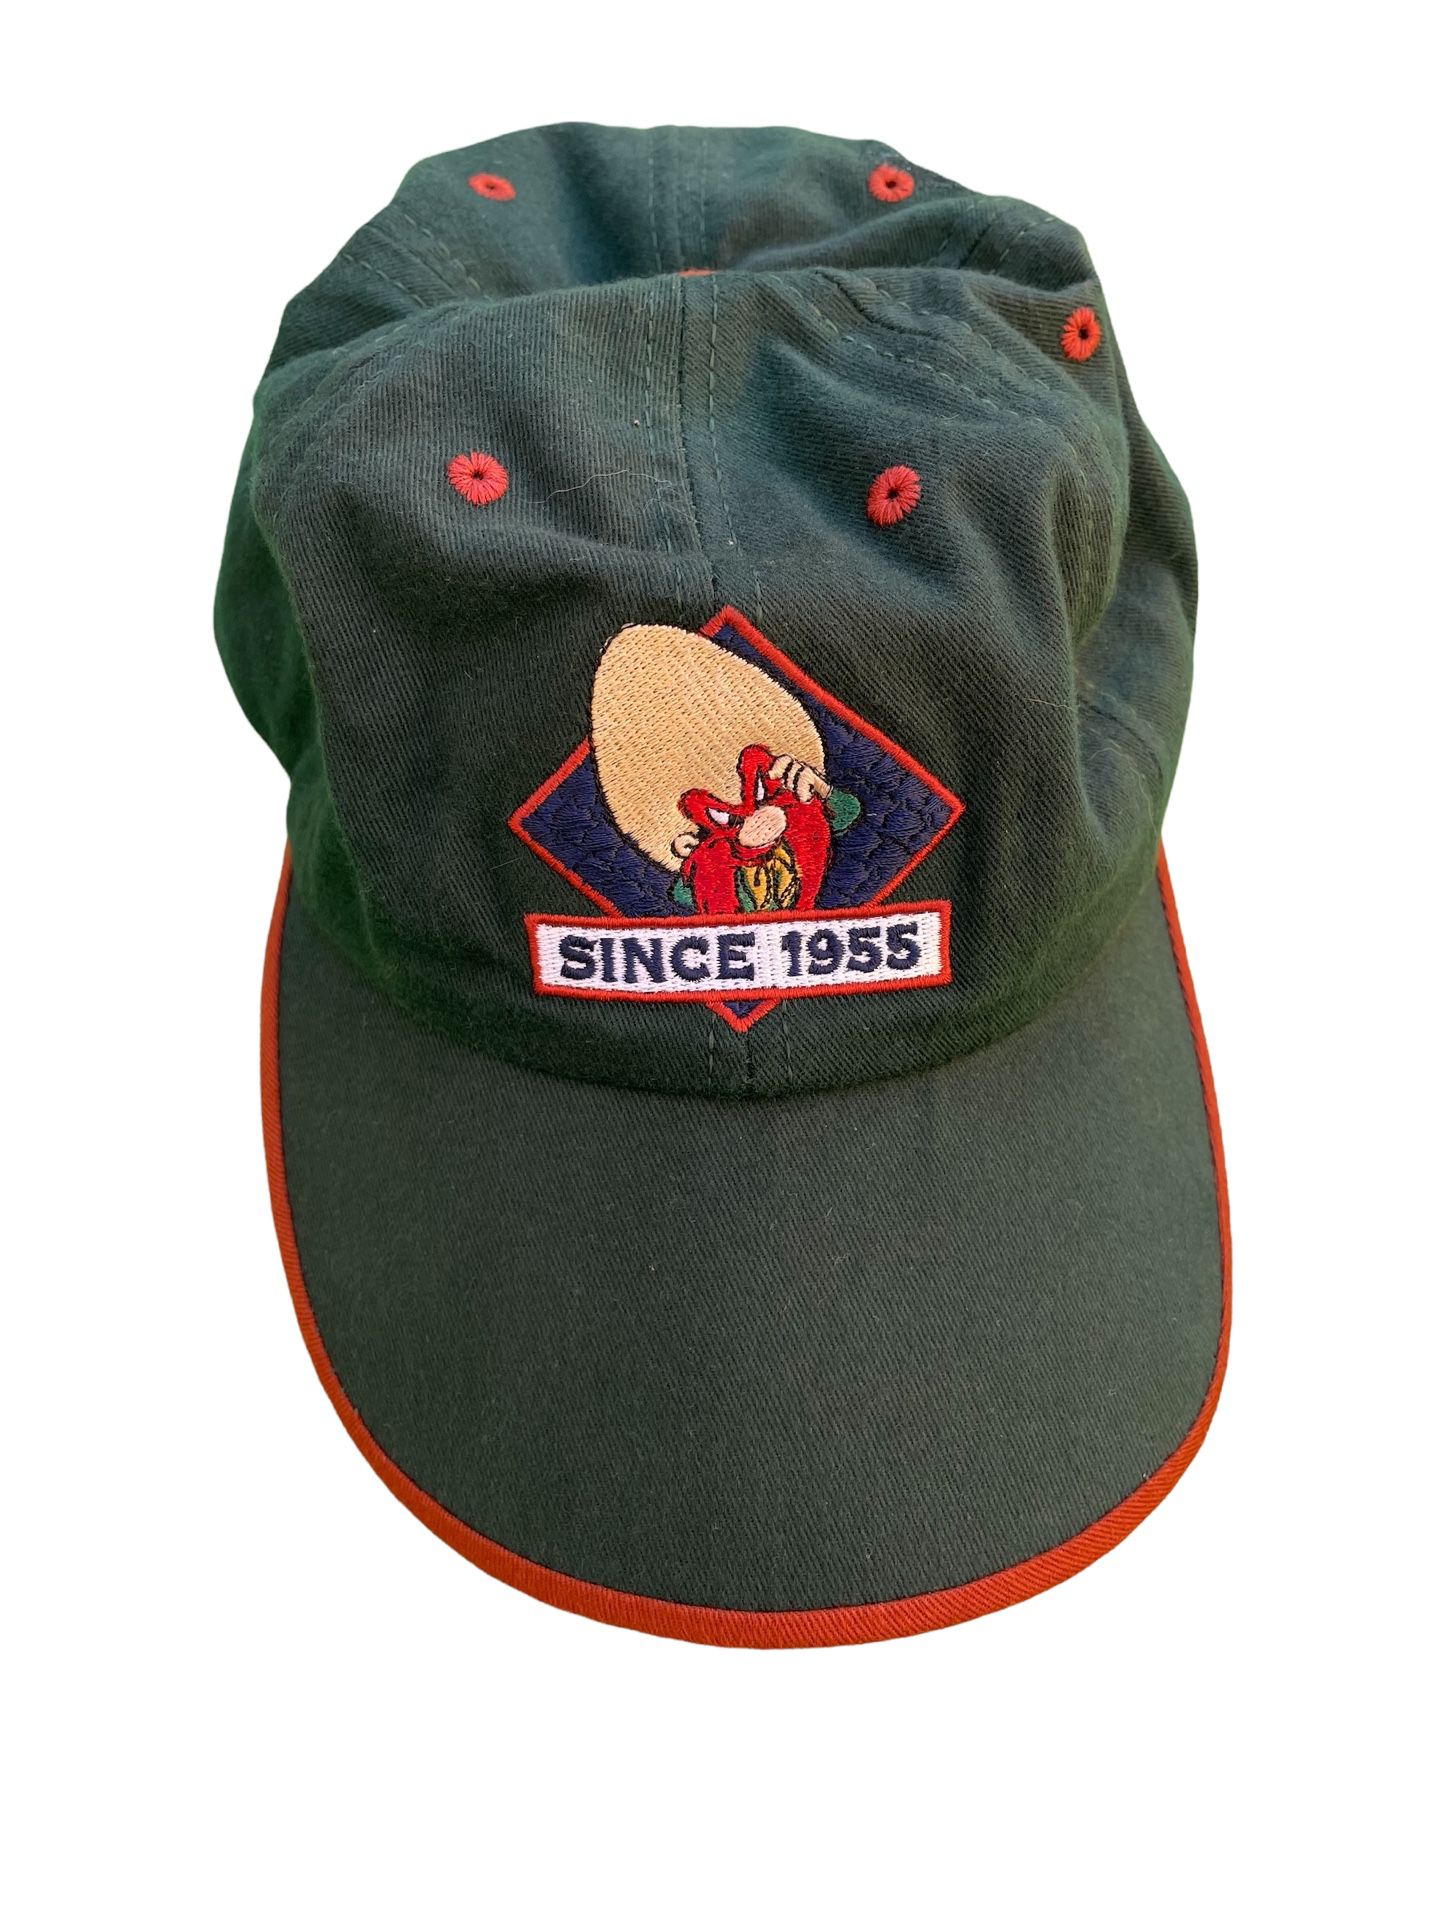 Vtg Yosemite Sam Looney Tunes Acme Clo Dad Hat Cap Since 1955